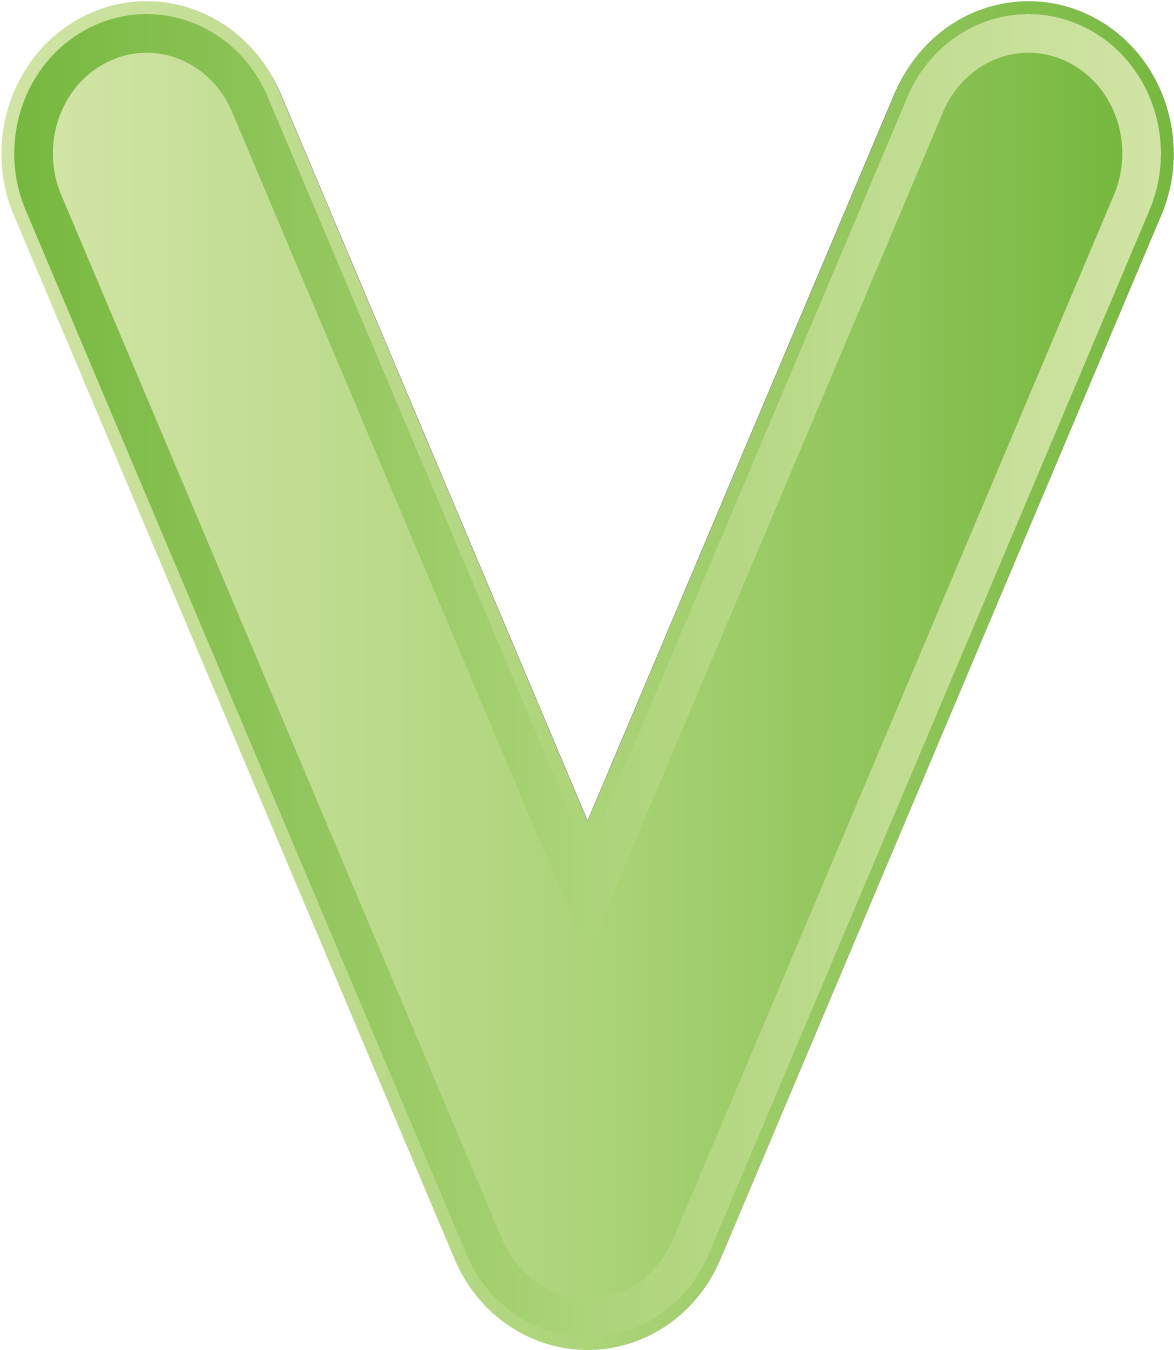 A Green Letter V